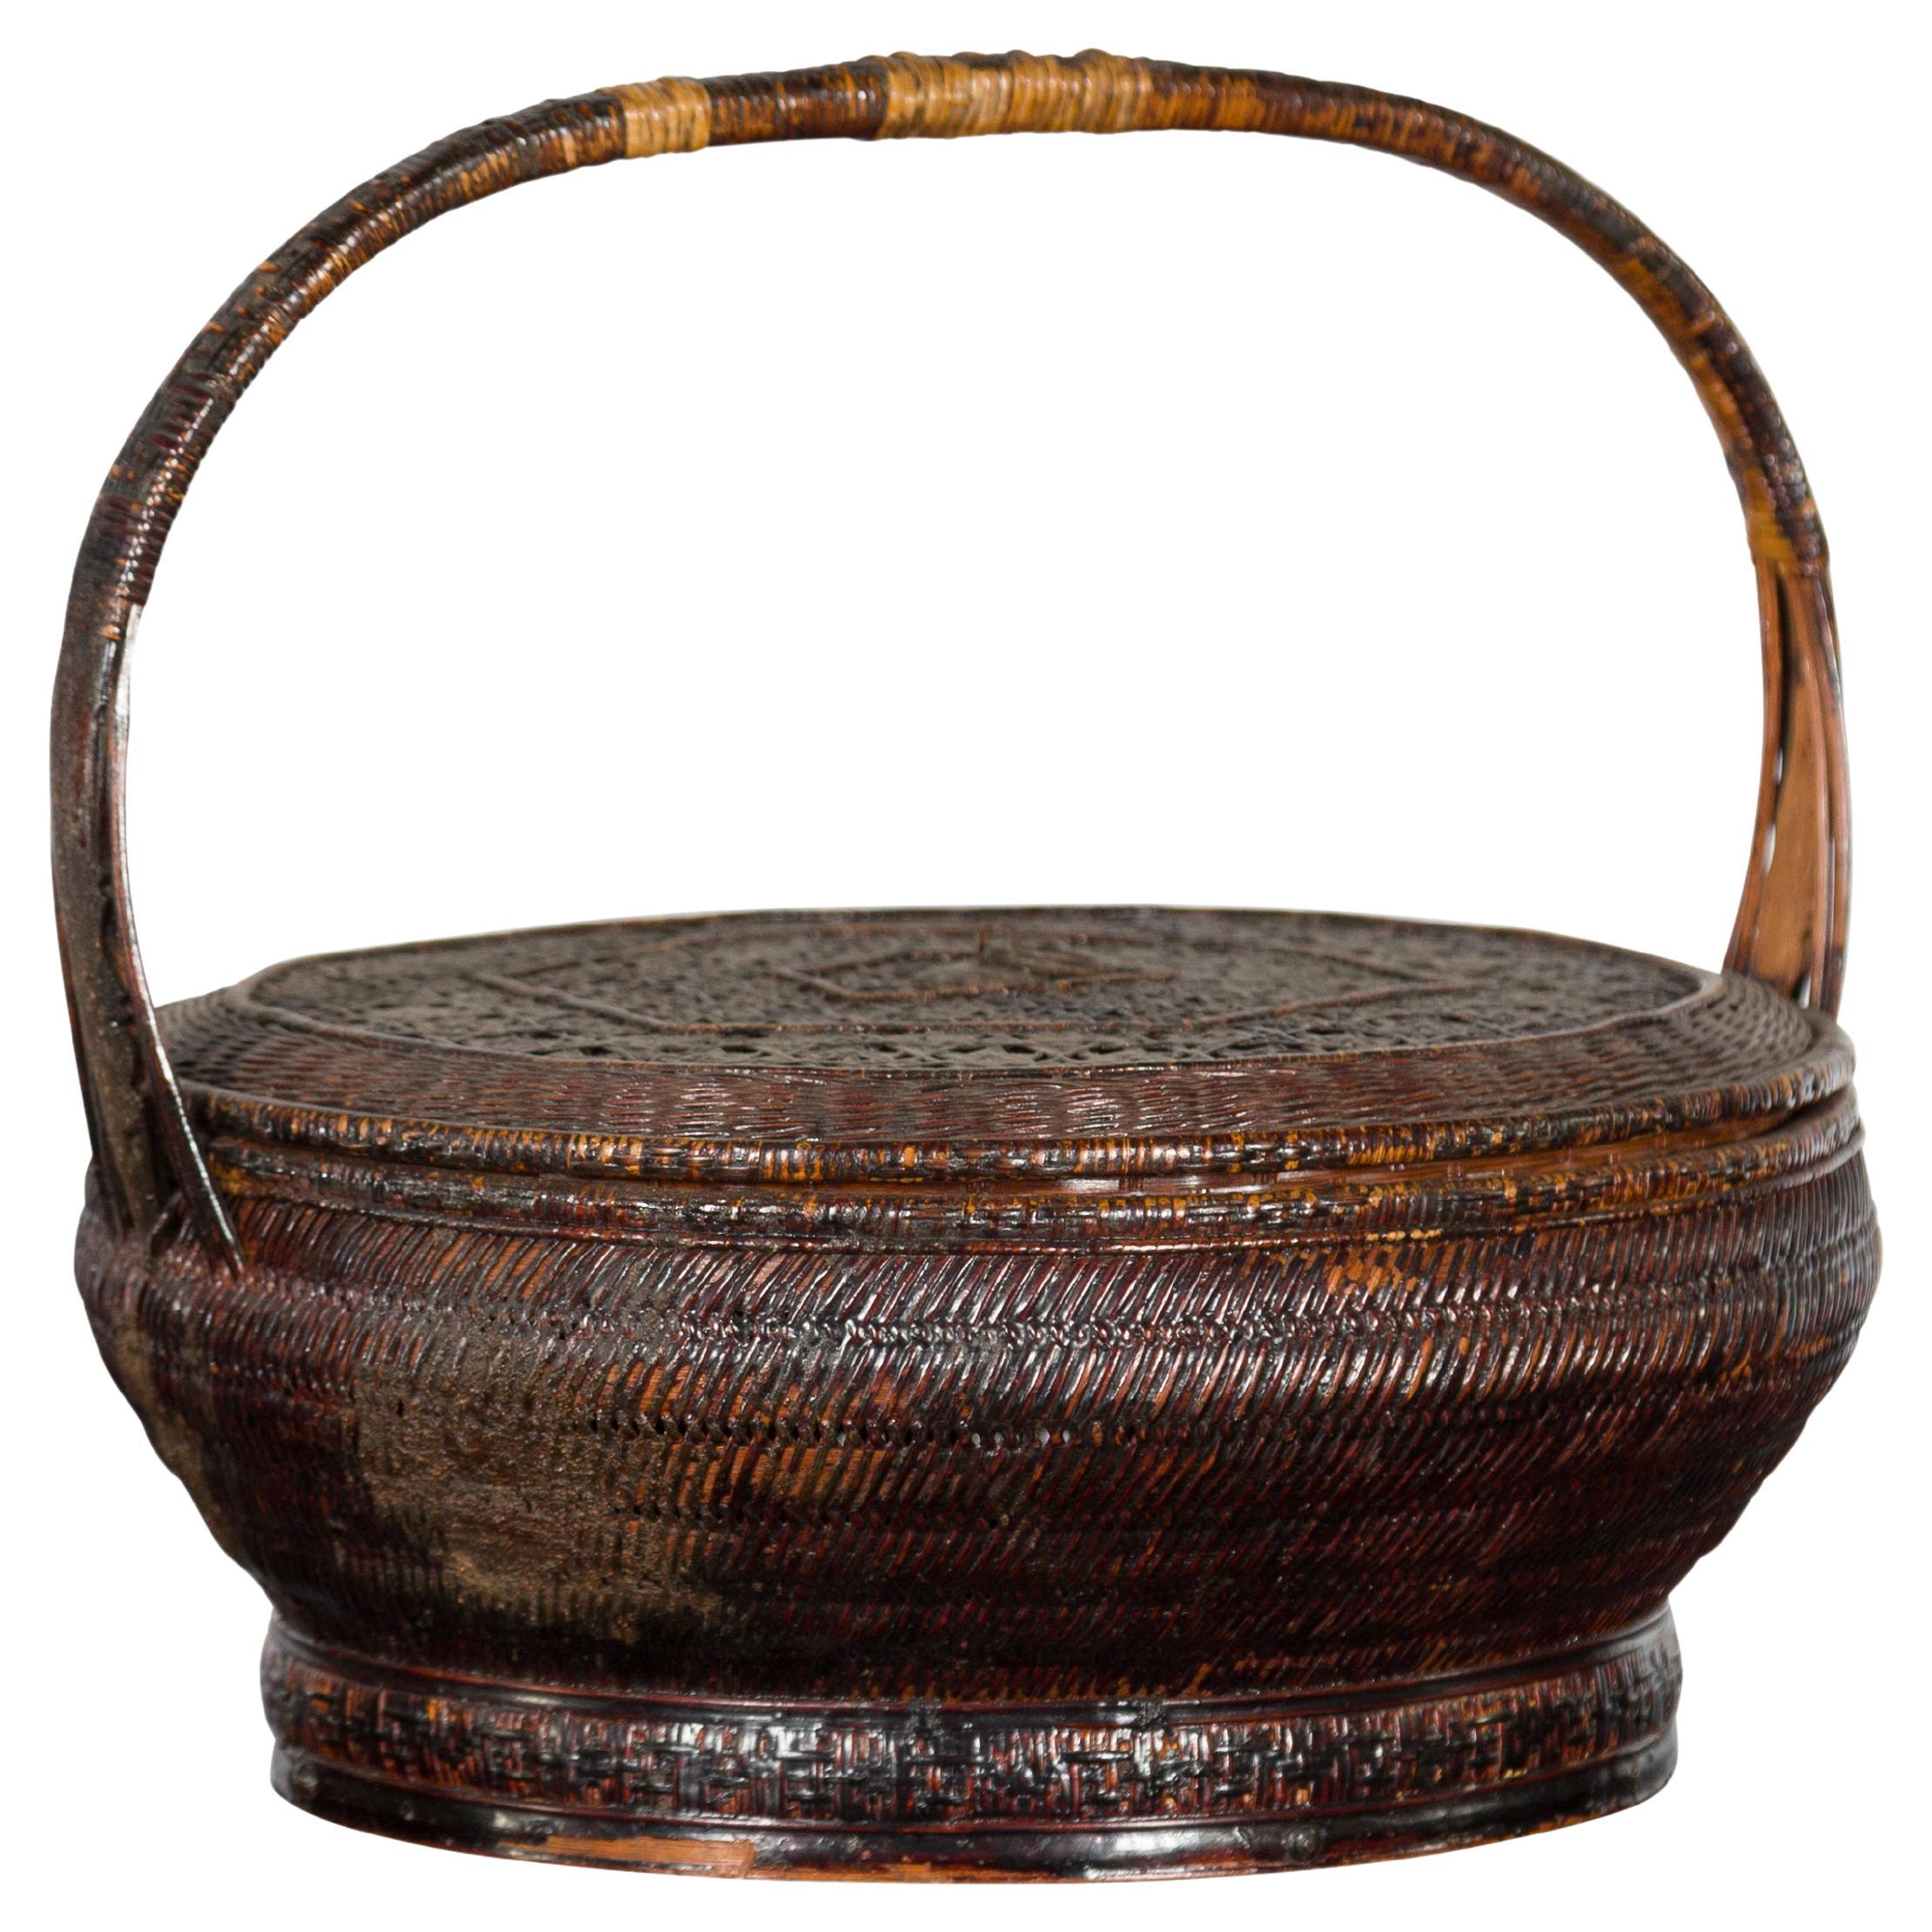 Handgewebter Korb aus Rattan und Bambus mit Griff aus der chinesischen Qing-Dynastie des 19. Jahrhunderts